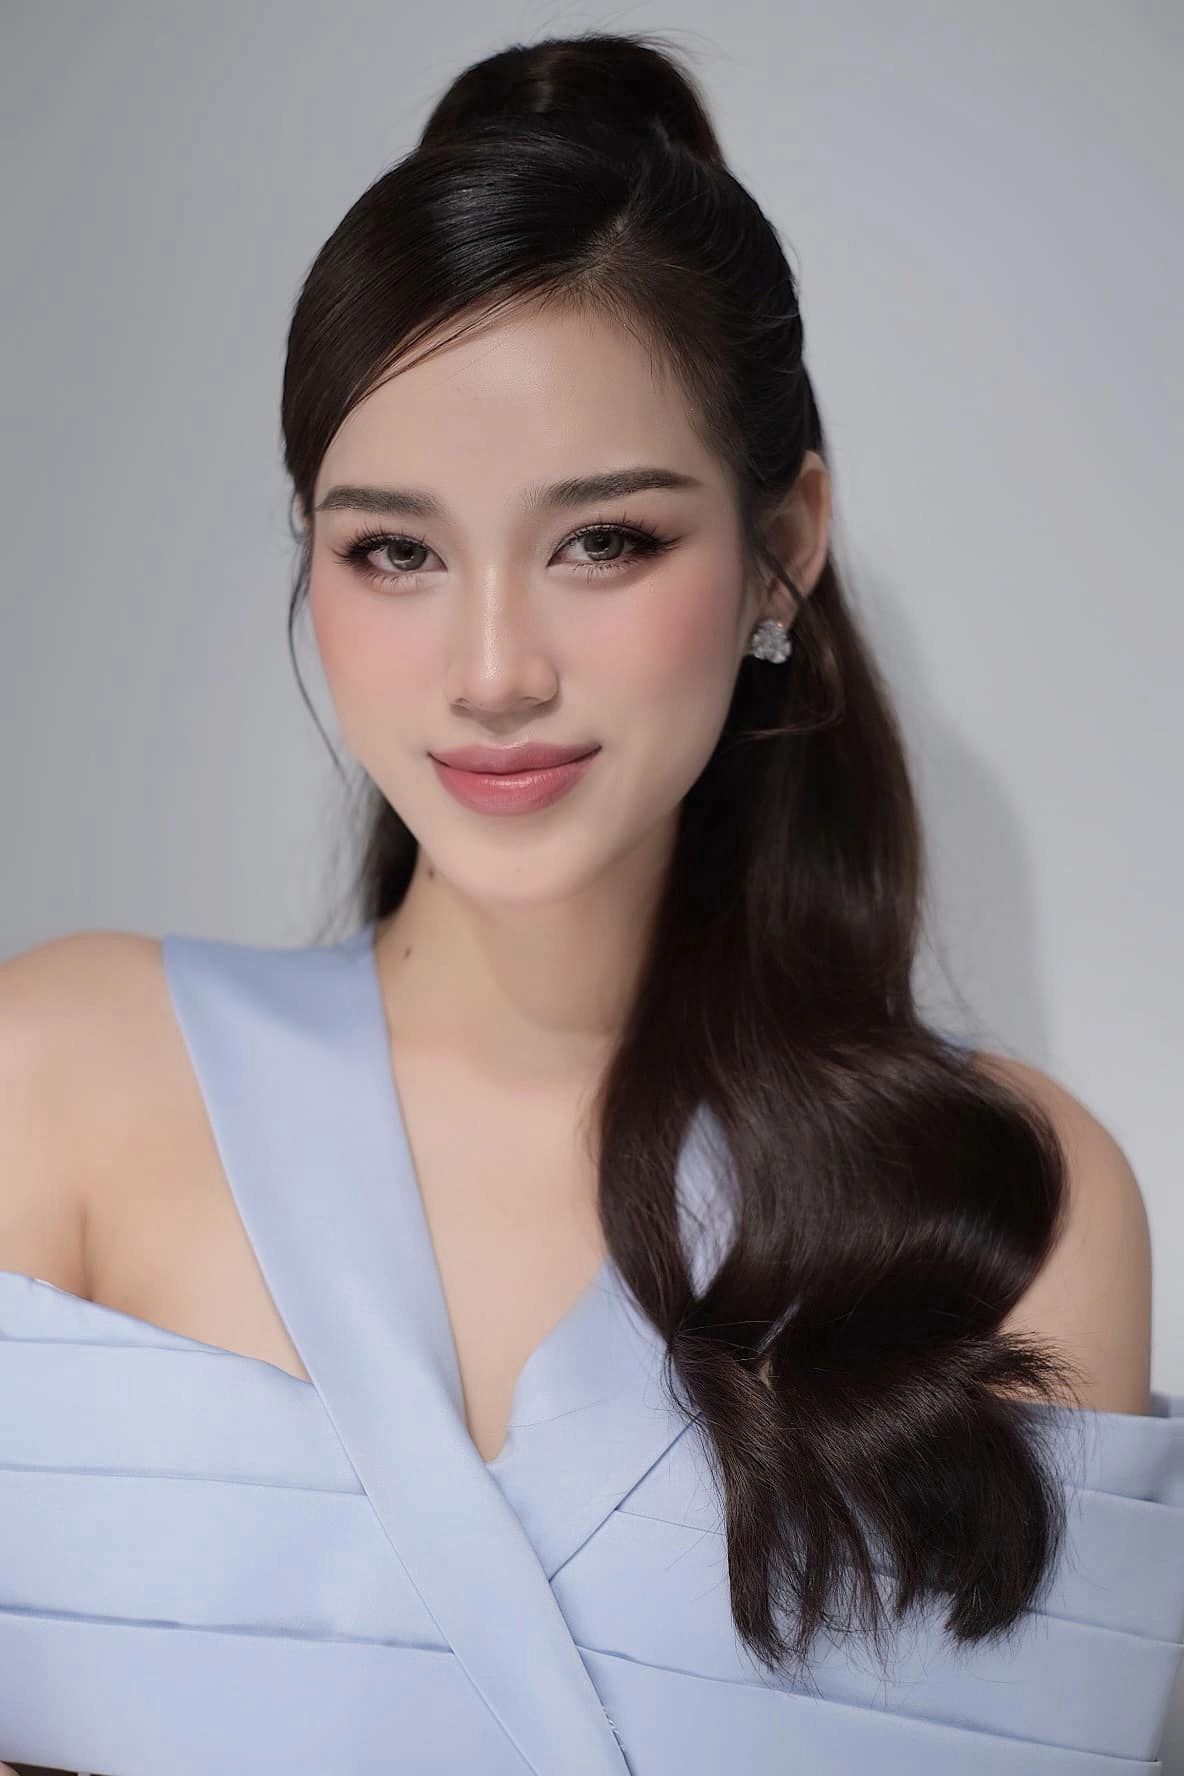 Cận cảnh gương mặt đẹp hoàn hảo của Hoa hậu Đỗ Thị Hà - ảnh 2